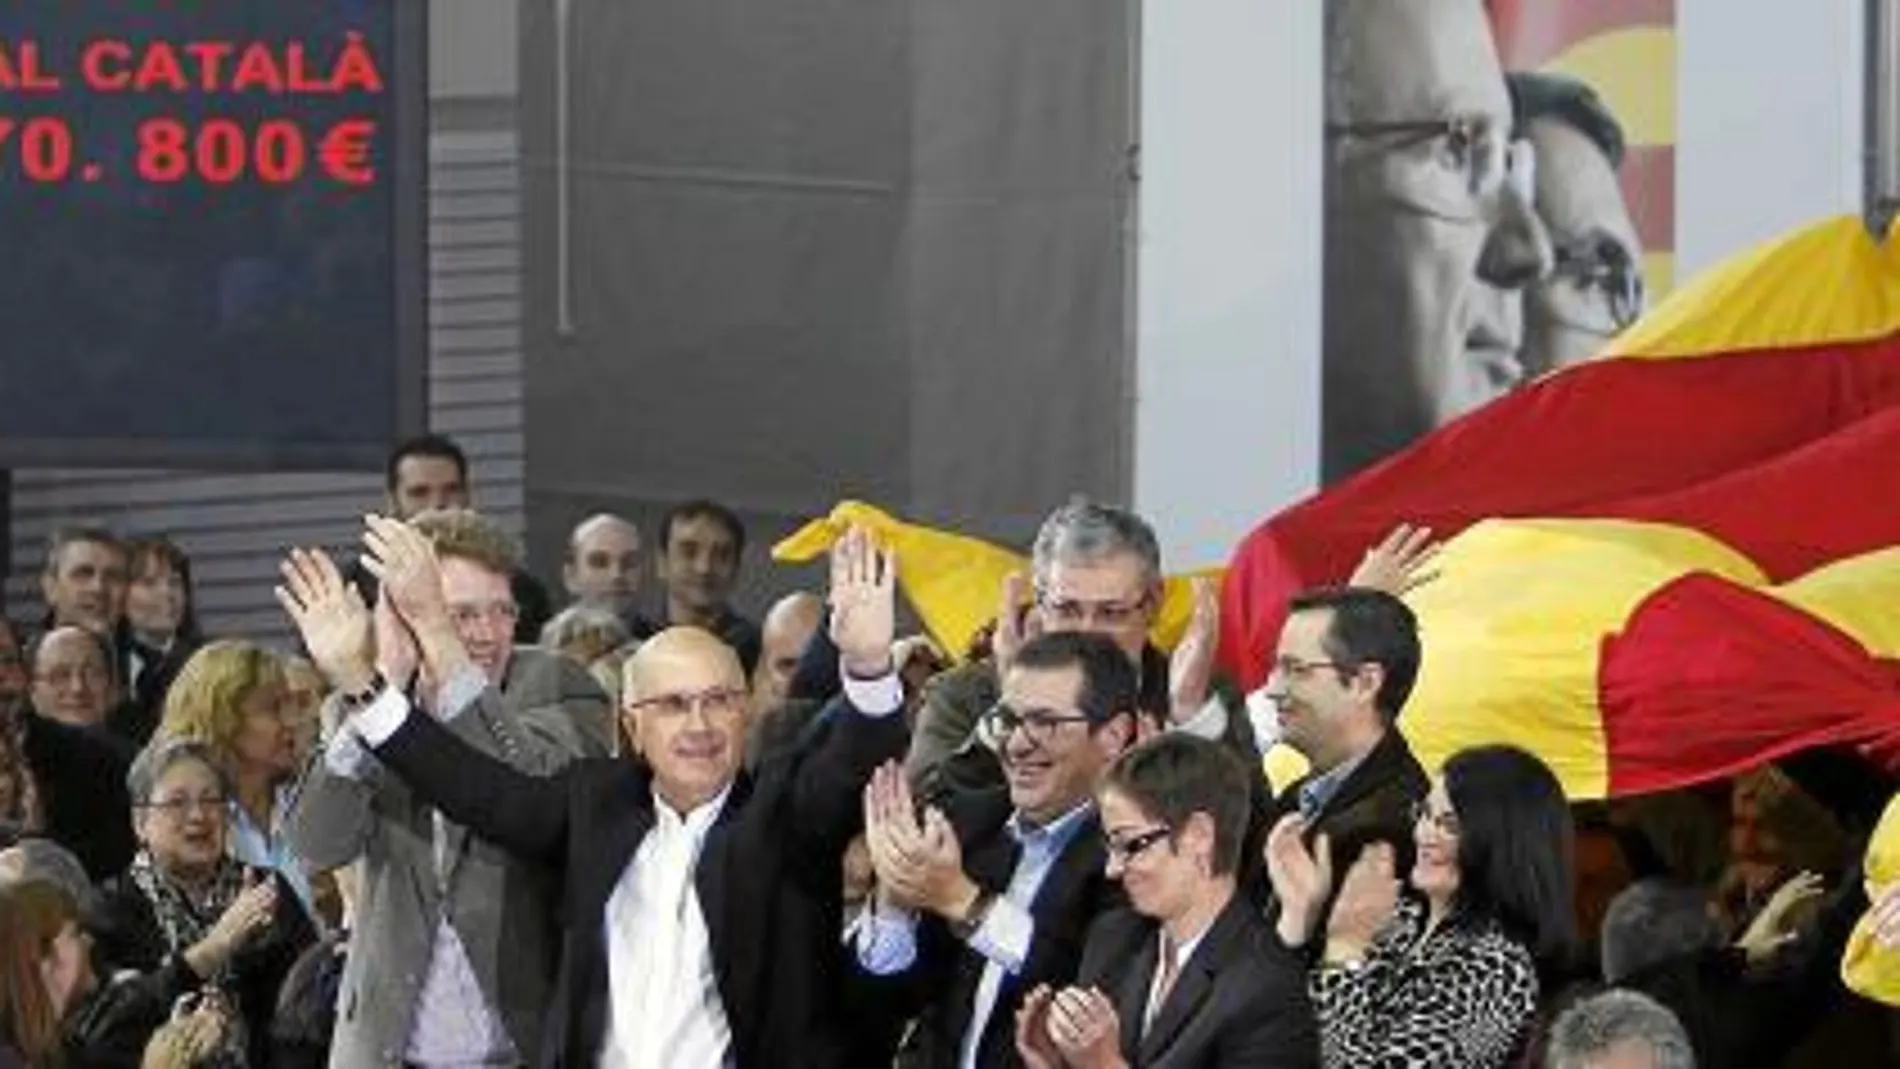 Duran Lleida en el mitin de Tortosa, en el que desplegaron una enorme bandera catalana